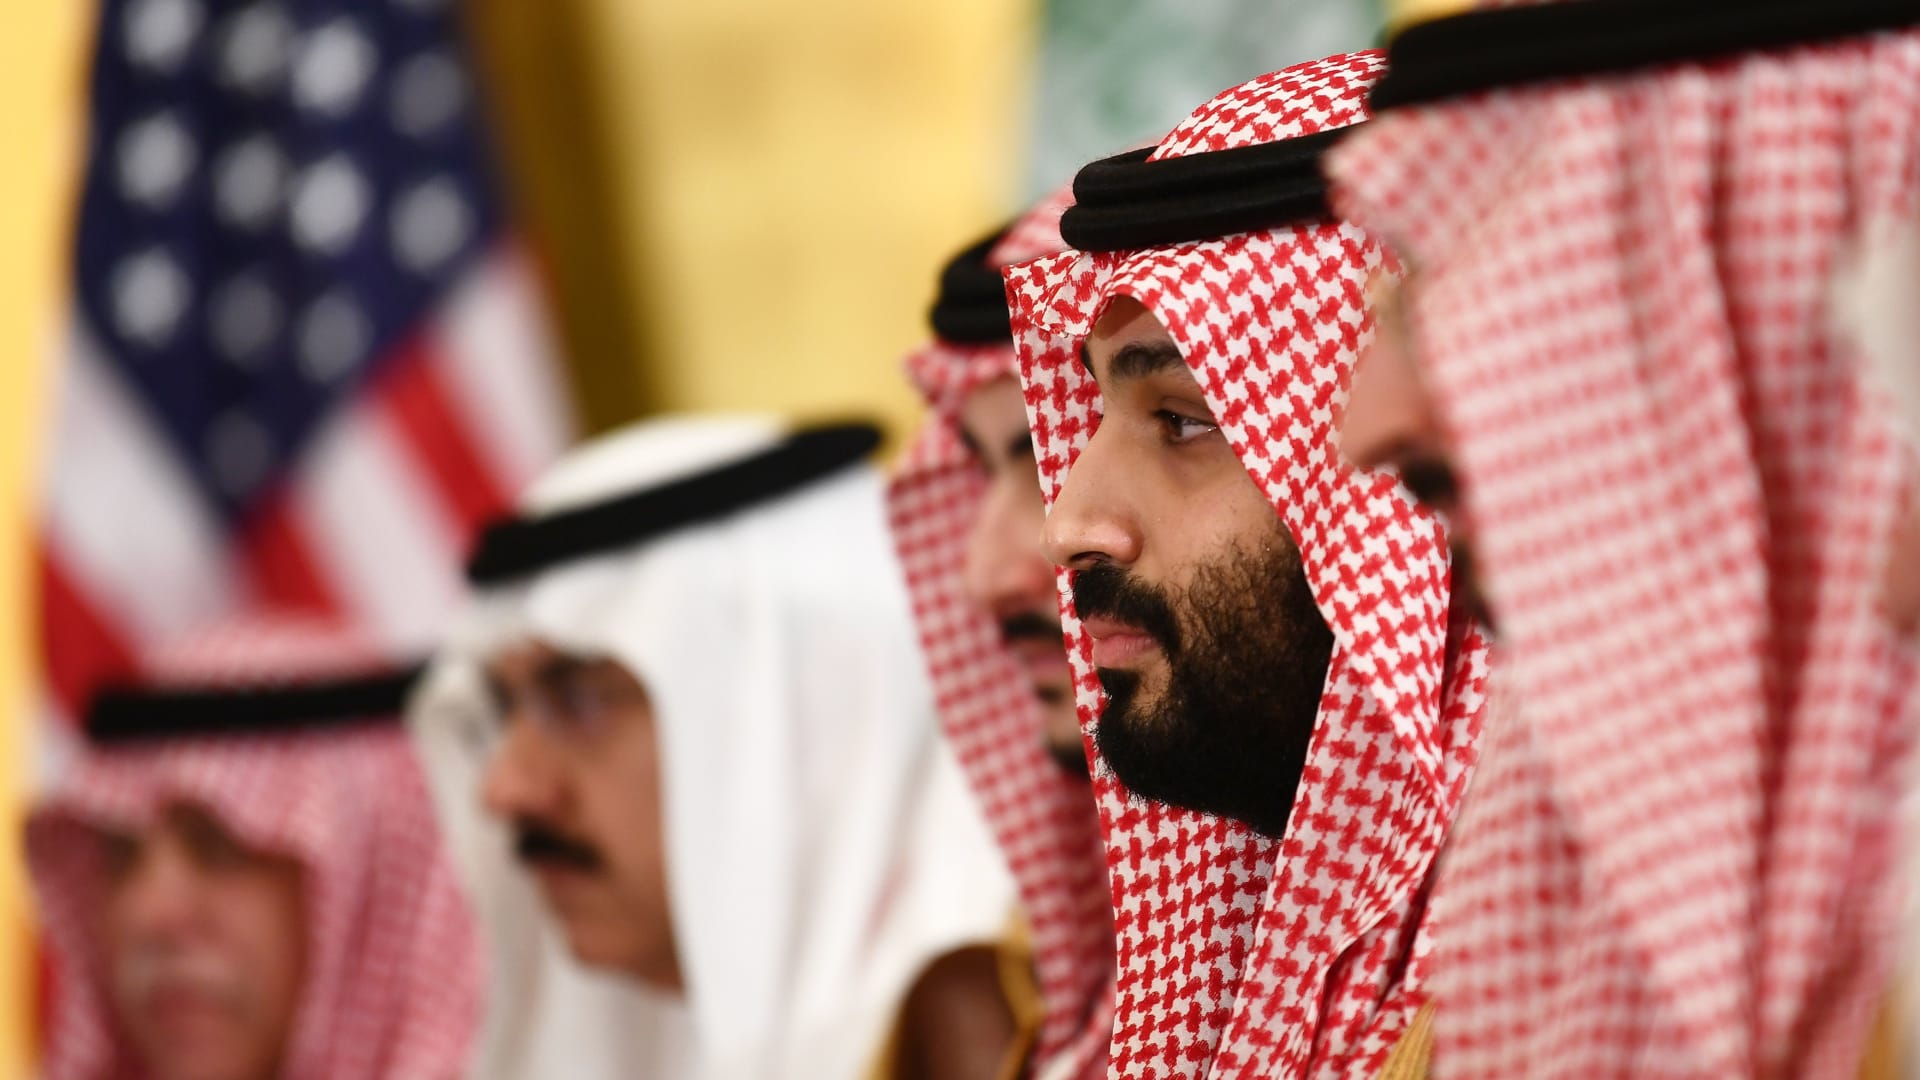 "أمريكا بحاجة لمساعدة السعودية بعدة جبهات" هو سبب استعداد بايدن لإعادة ضبط العلاقة مع الرياض.. مراسل CNN للأمن القومي يوضح